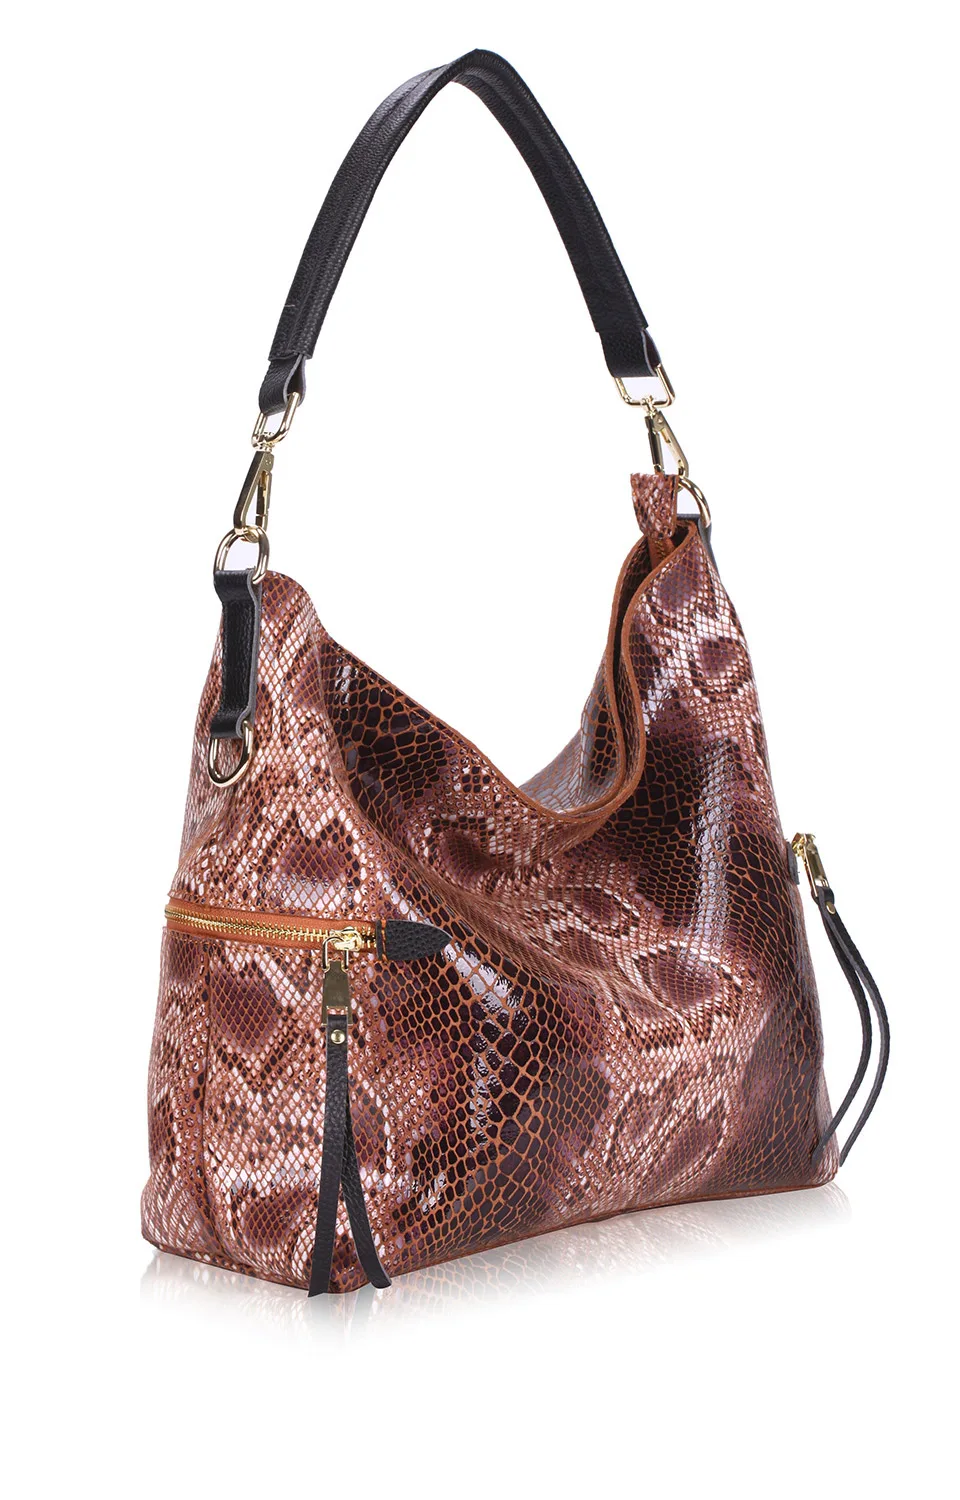 ZROM женская сумка-тоут из натуральной кожи, повседневные сумки со змеиным узором, Большая вместительная женская сумка на плечо, большие женские сумки для покупок